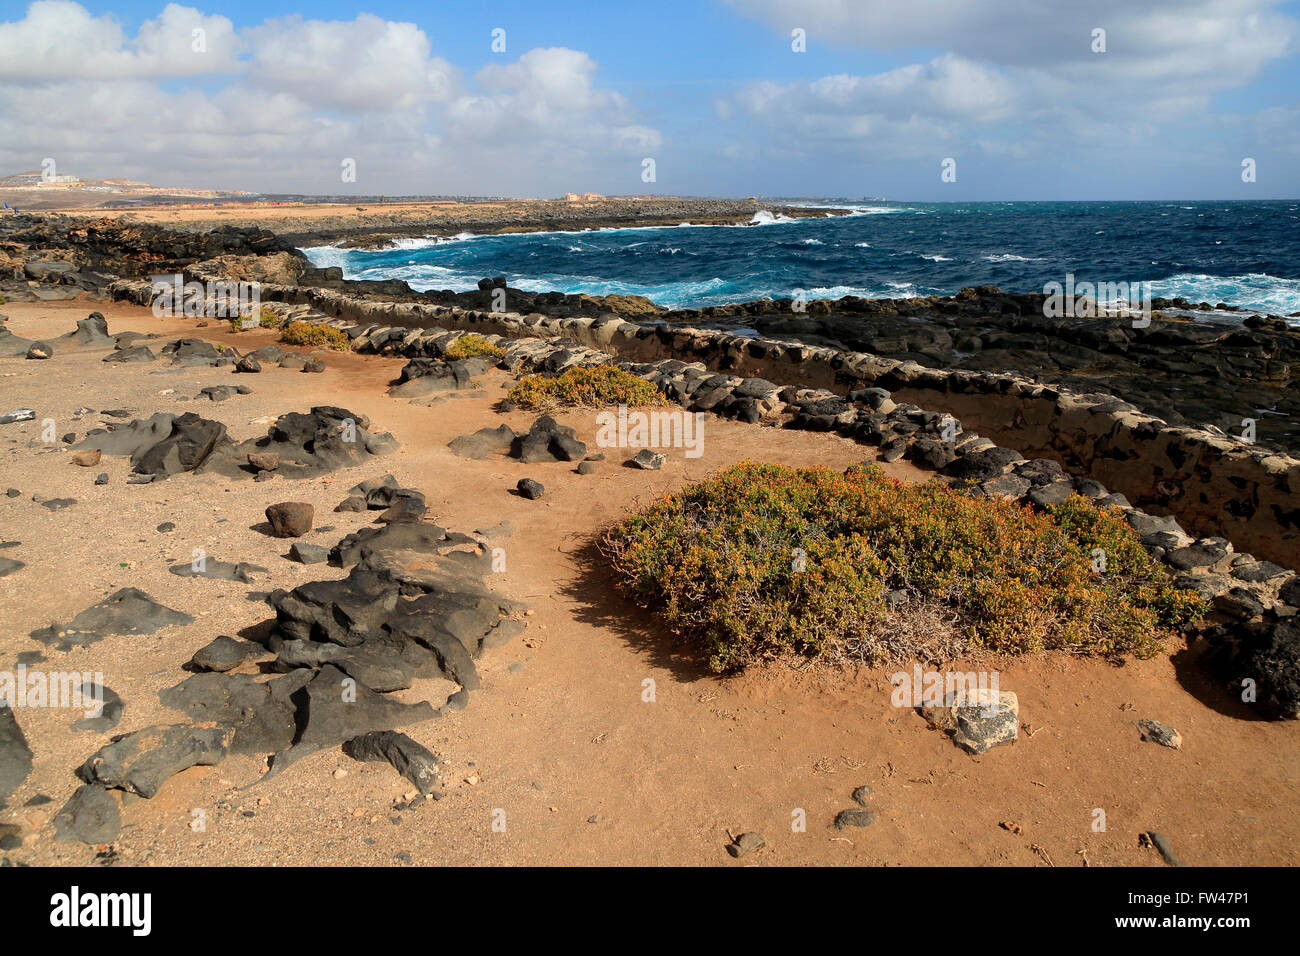 Coastline at Museo de la Sal, Salt museum, Las Salinas del Carmen, Fuerteventura, Canary Islands, Spain Stock Photo